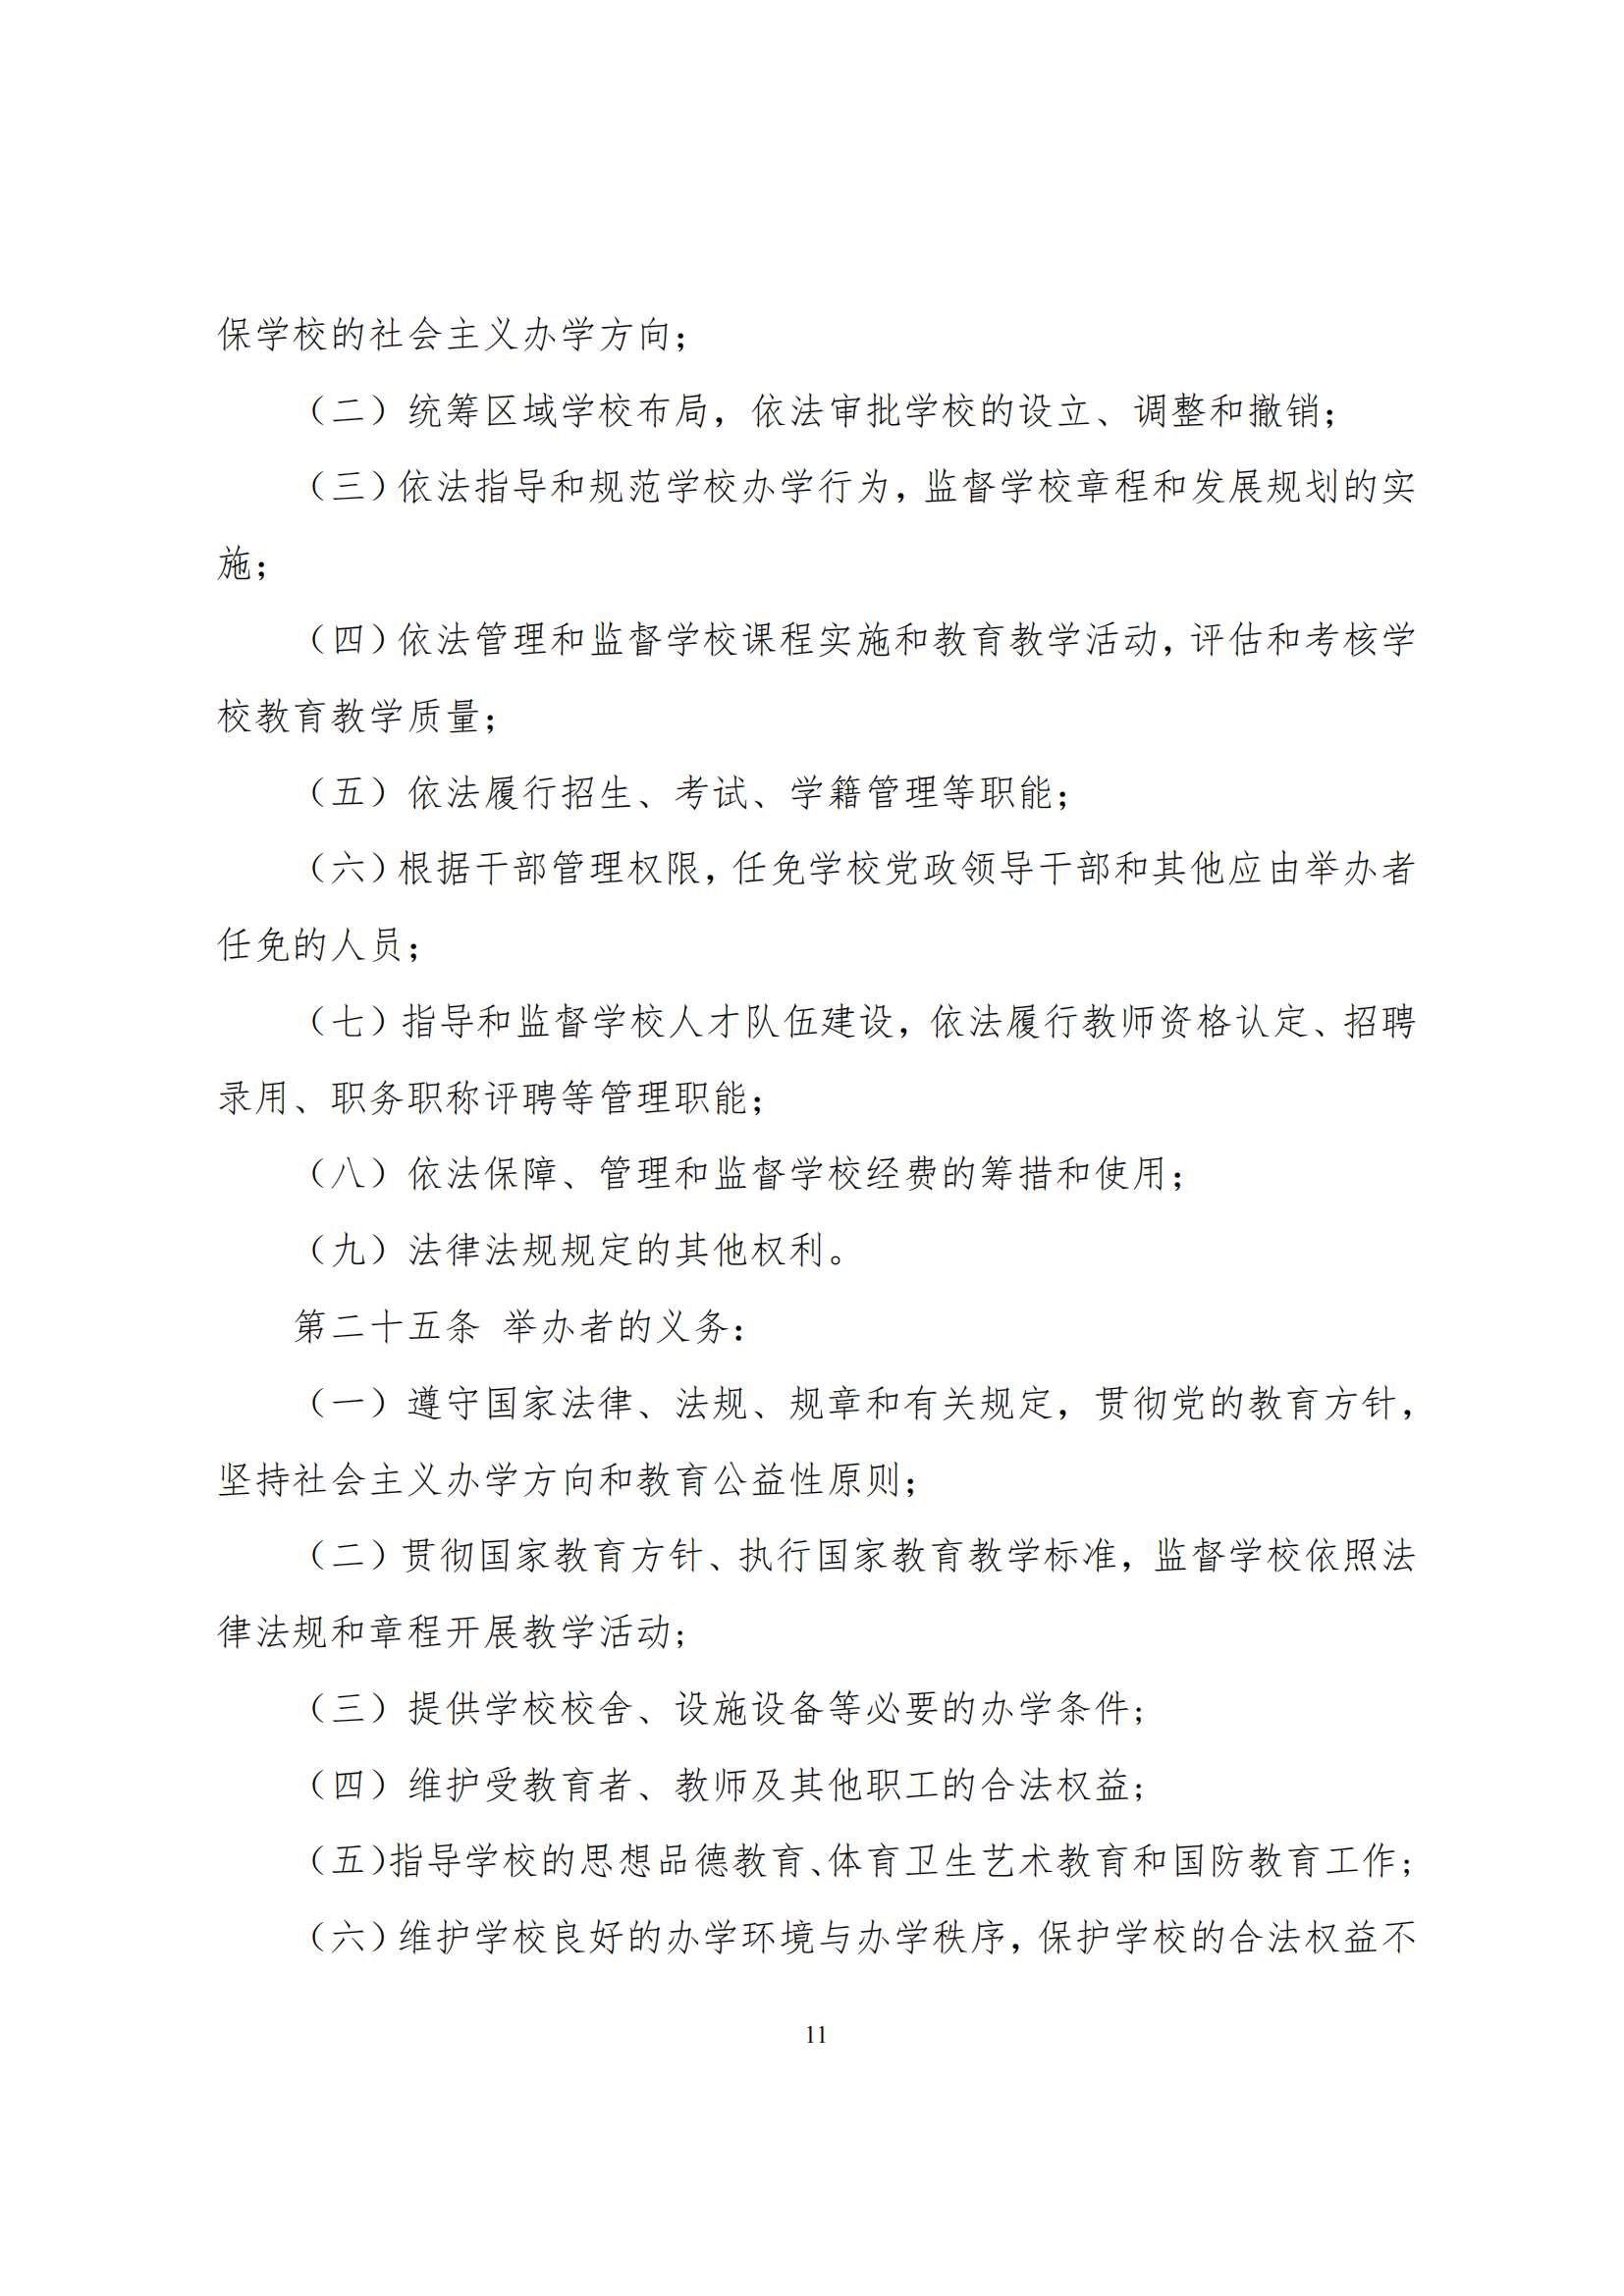 上海市徐汇区求知小学学校章程（提交稿）_10.png